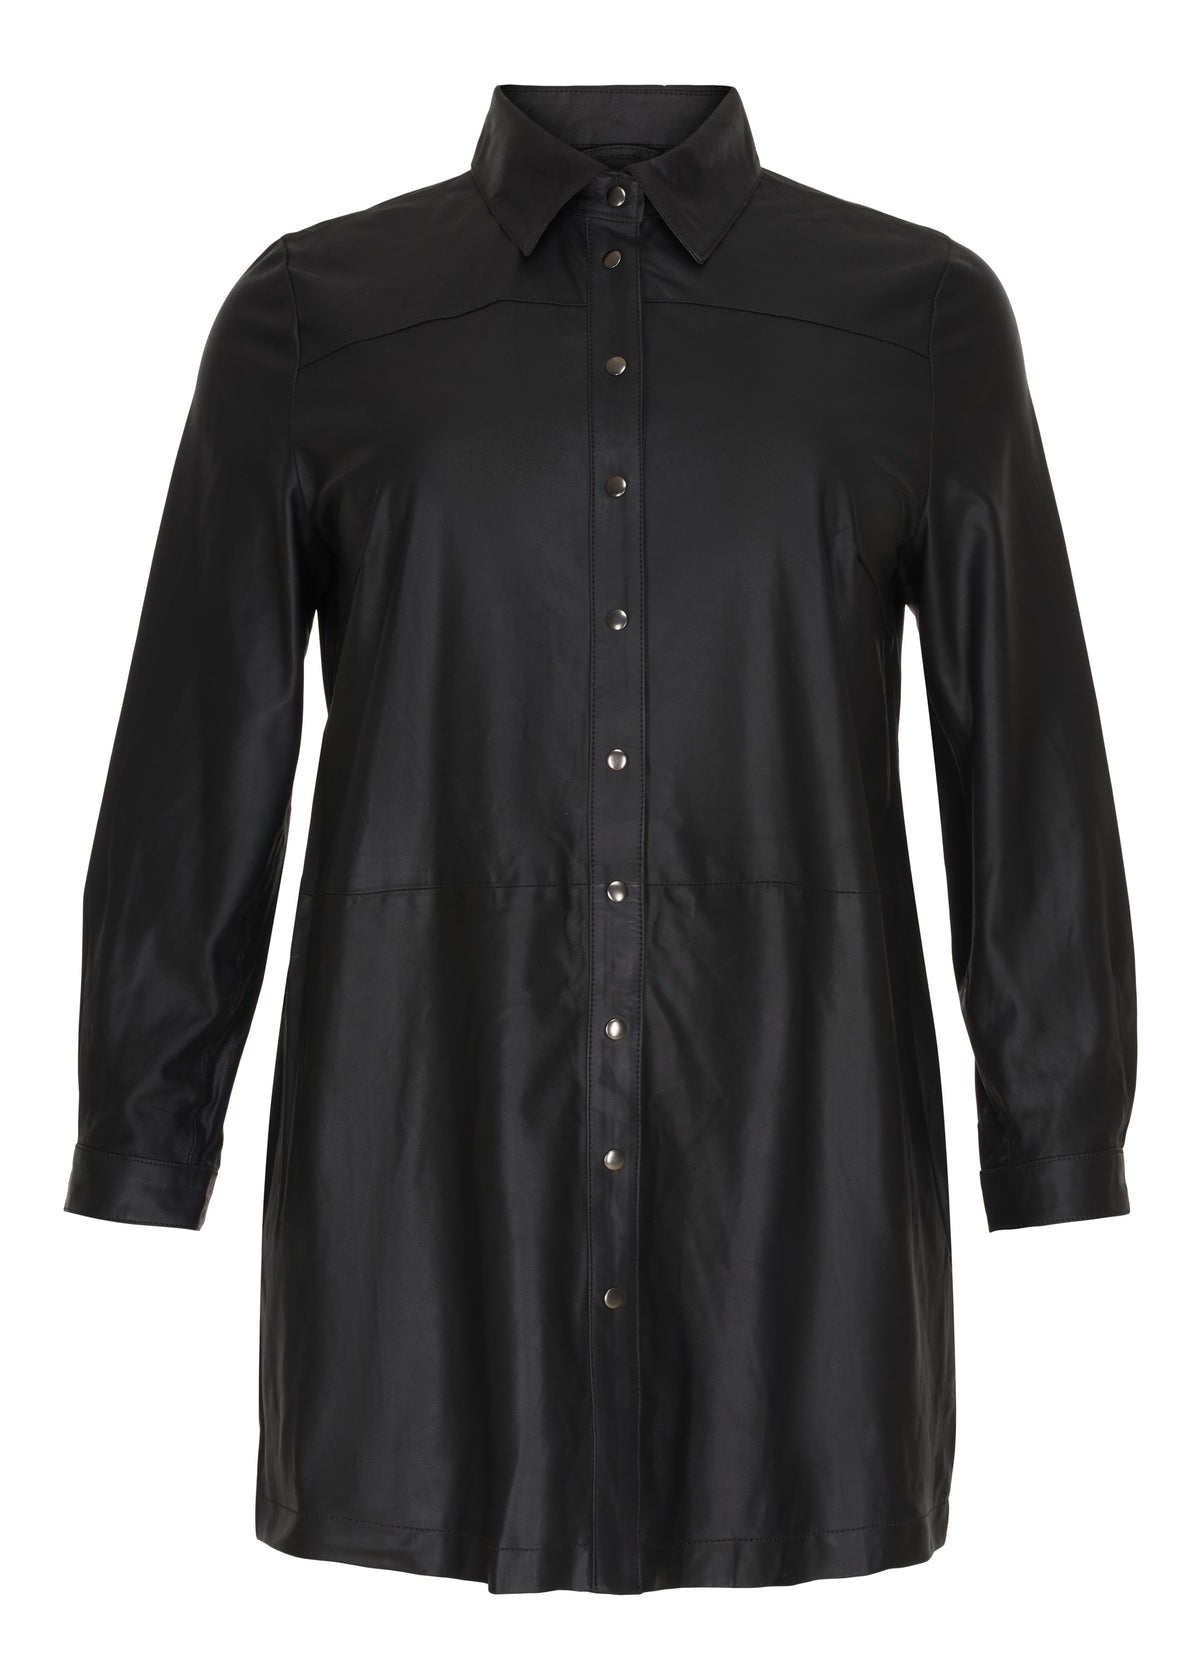 NO. 1 BY OX Lang skjorte i læder (Str. 36-46) Skjorter Sort